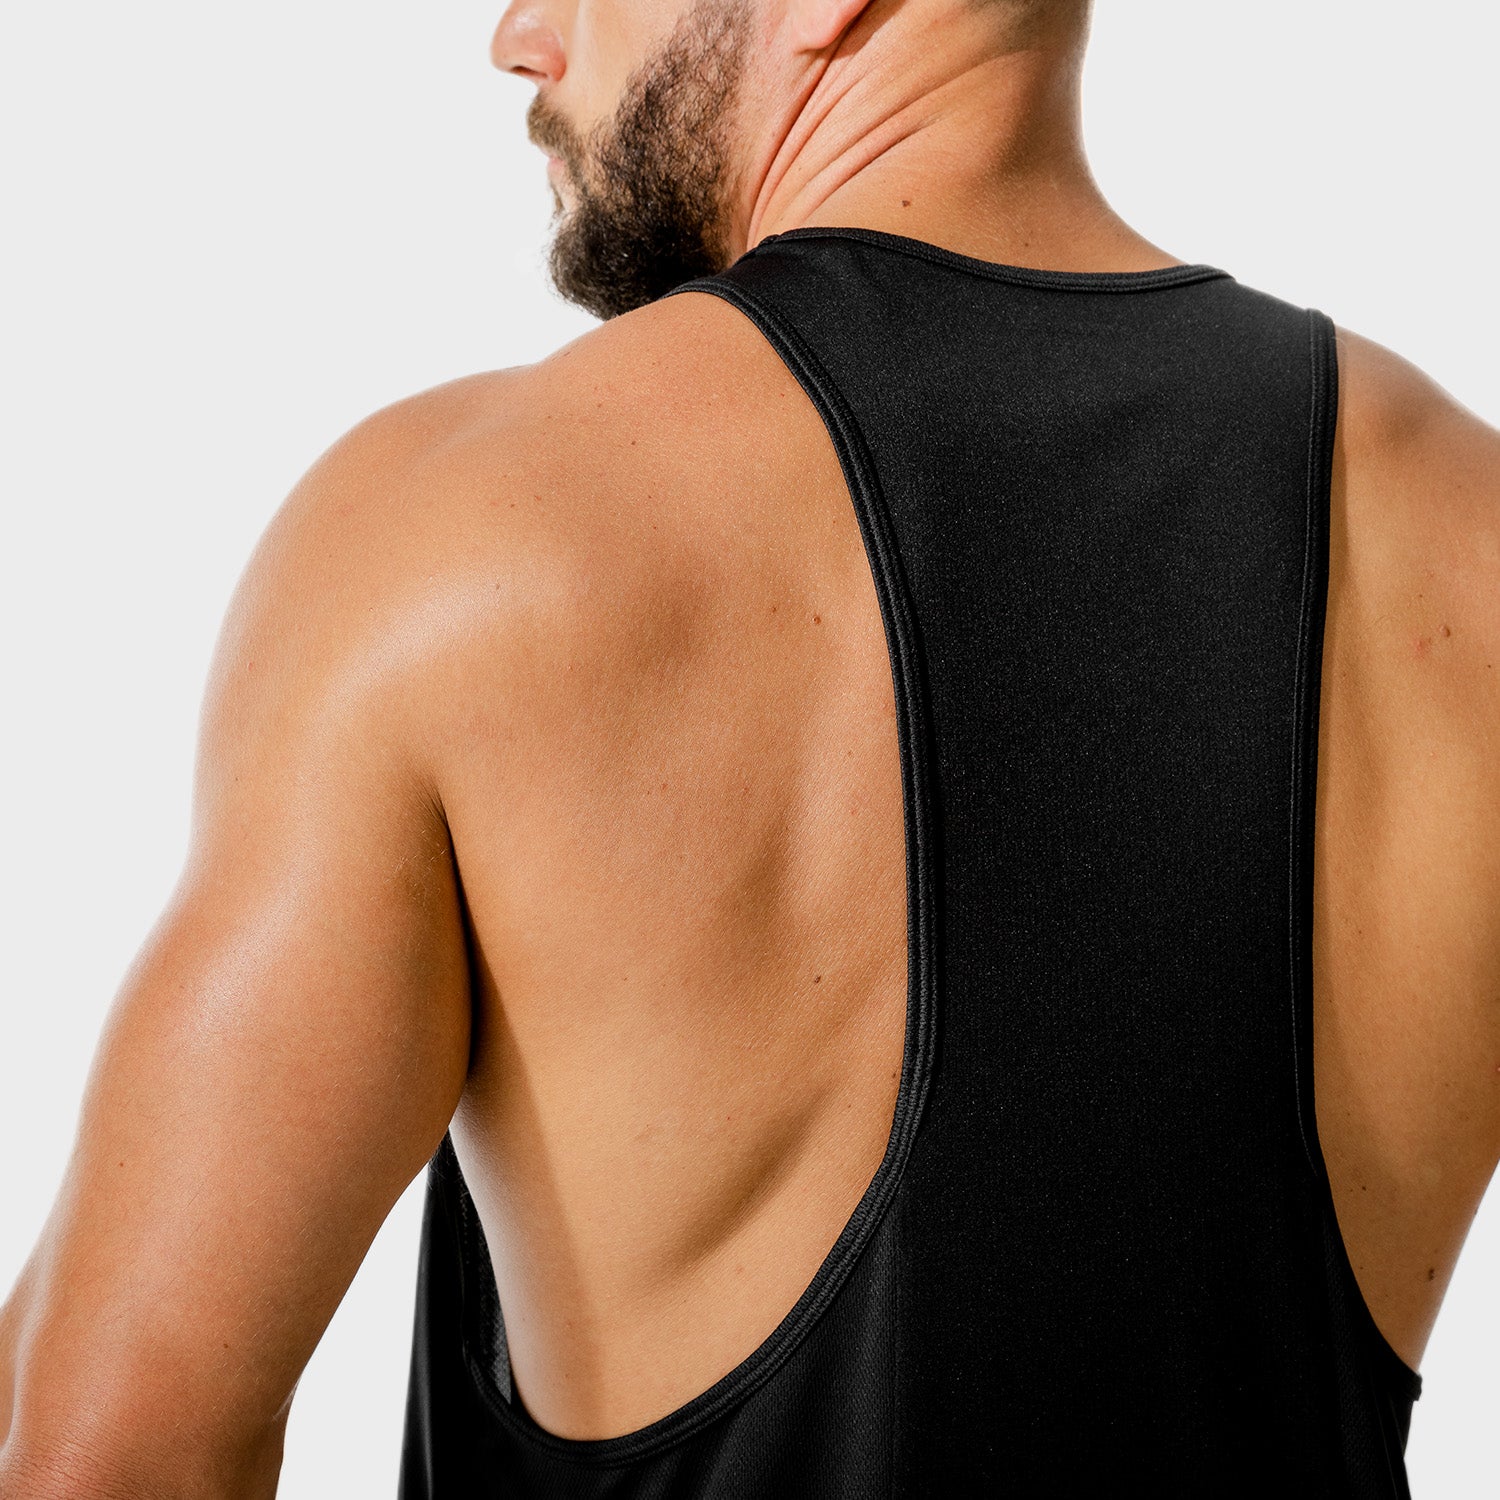 squatwolf-gym-wear-lab-360-performance-vest-black-stringer-vests-for-men